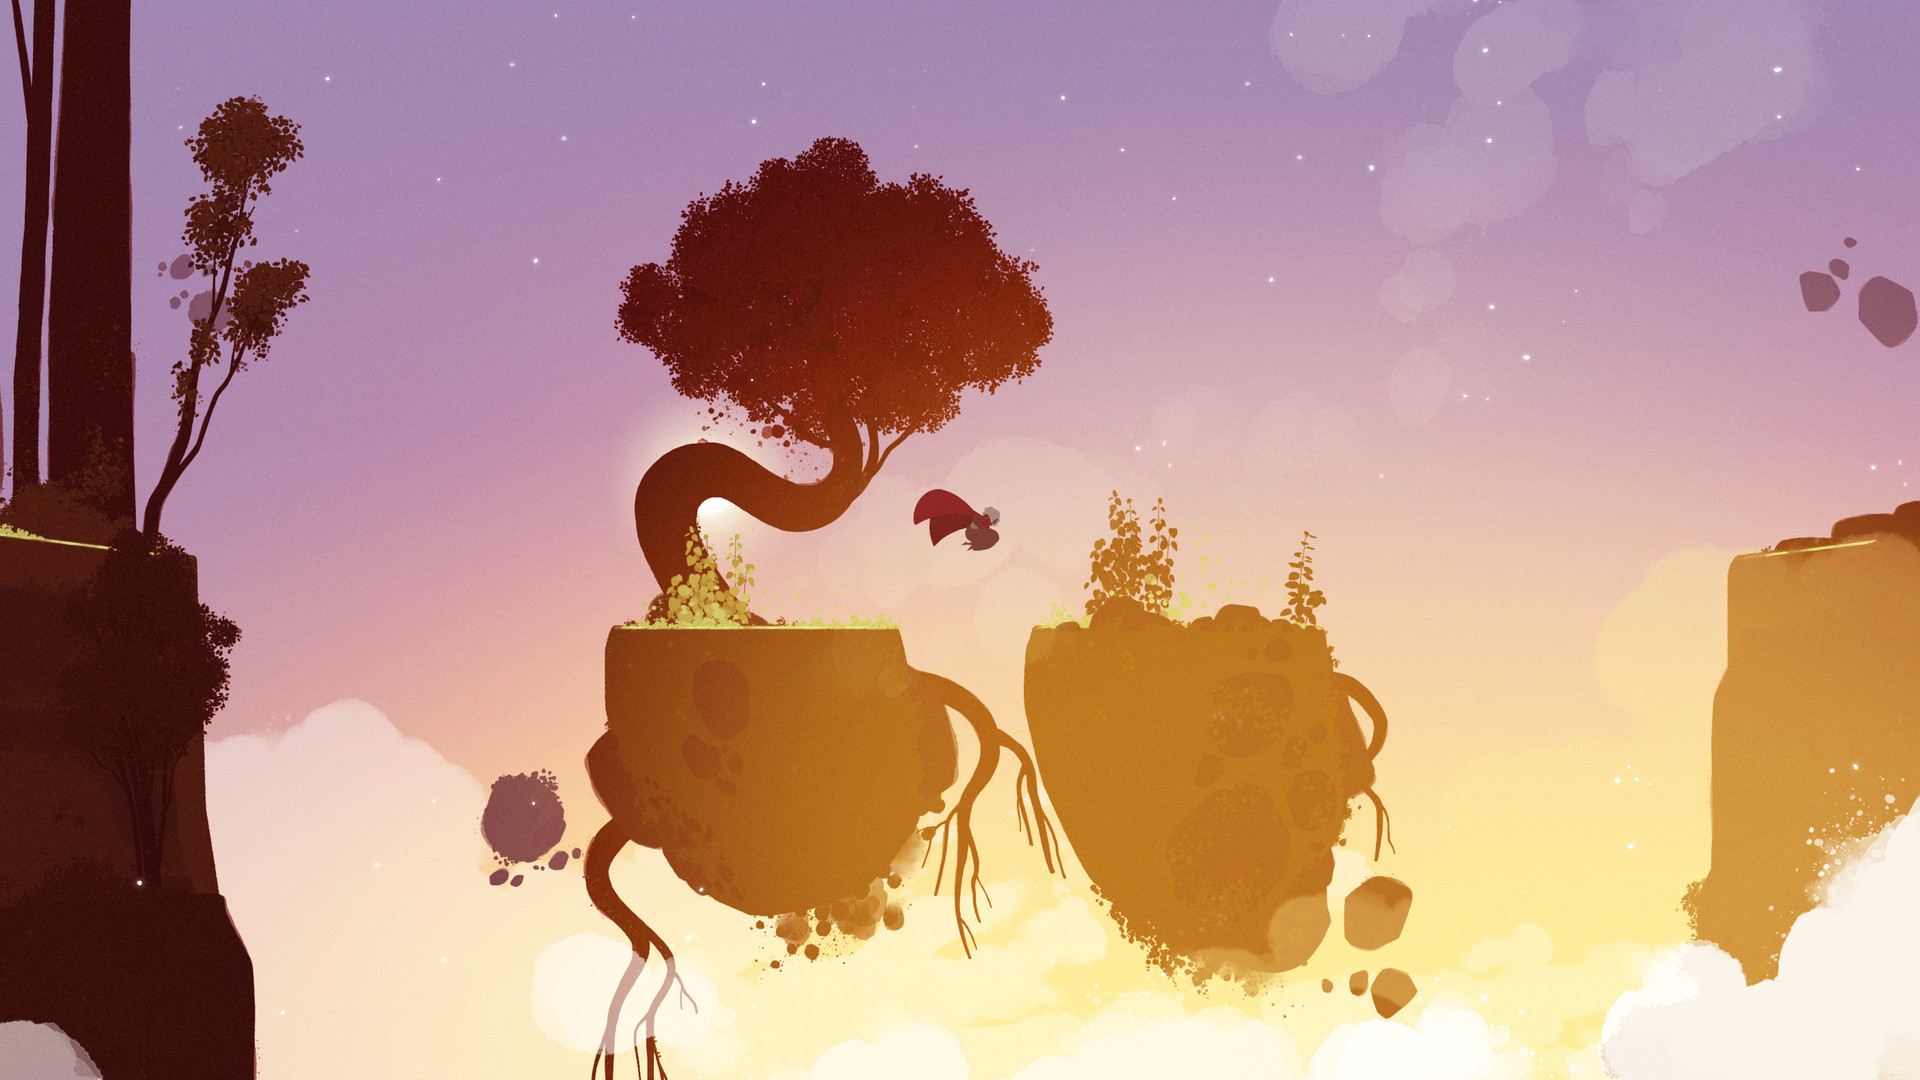 《Neva》的美丽画面，描绘了一个角色从浮岩跳跃到另一个岩石上，天空绘着粉红、紫色和黄色的色调